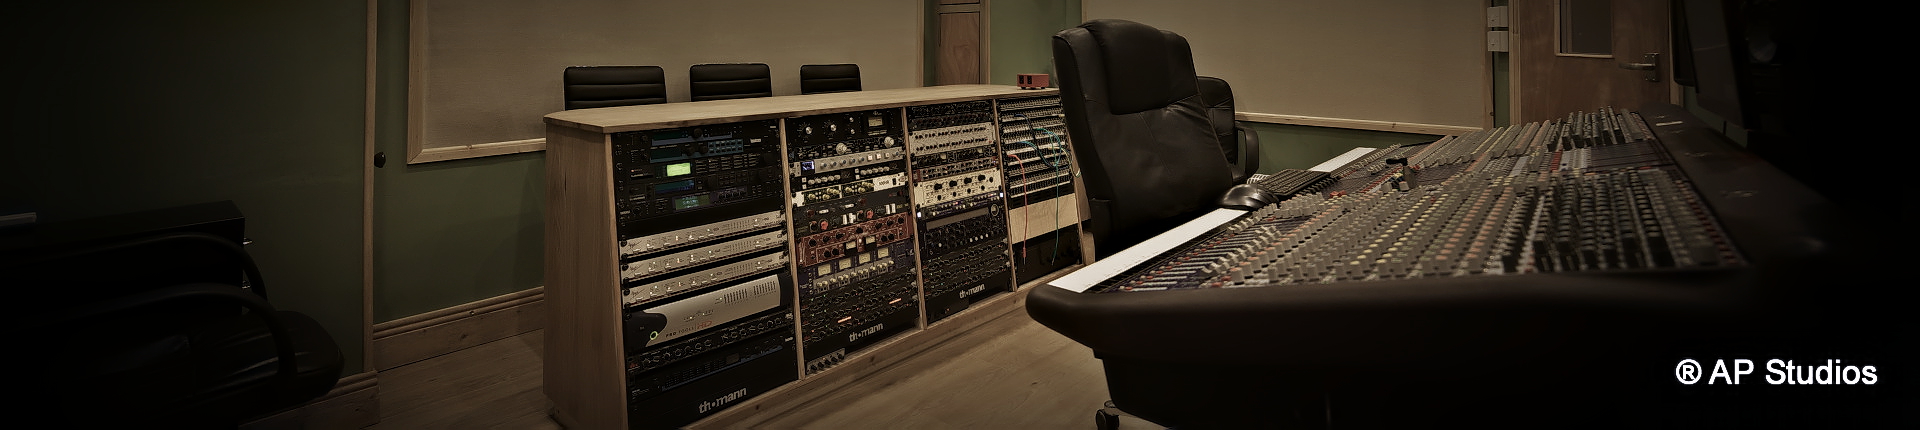 AP Recording Studios Dublin control room